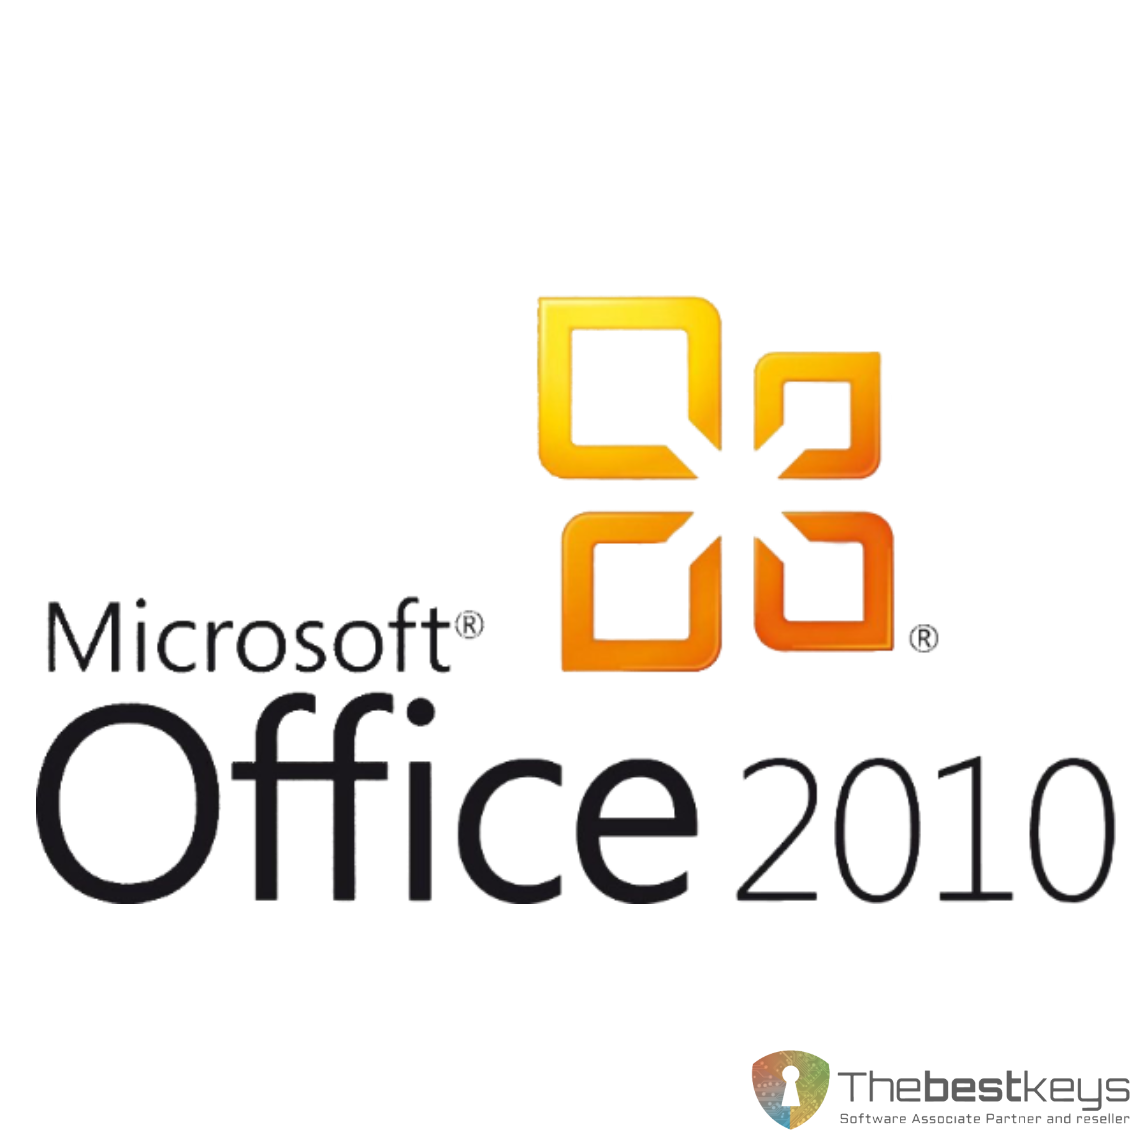 Офис 2010 год. Microsoft Office. Офис 2010. Microsoft 2010. Логотип Office 2010.